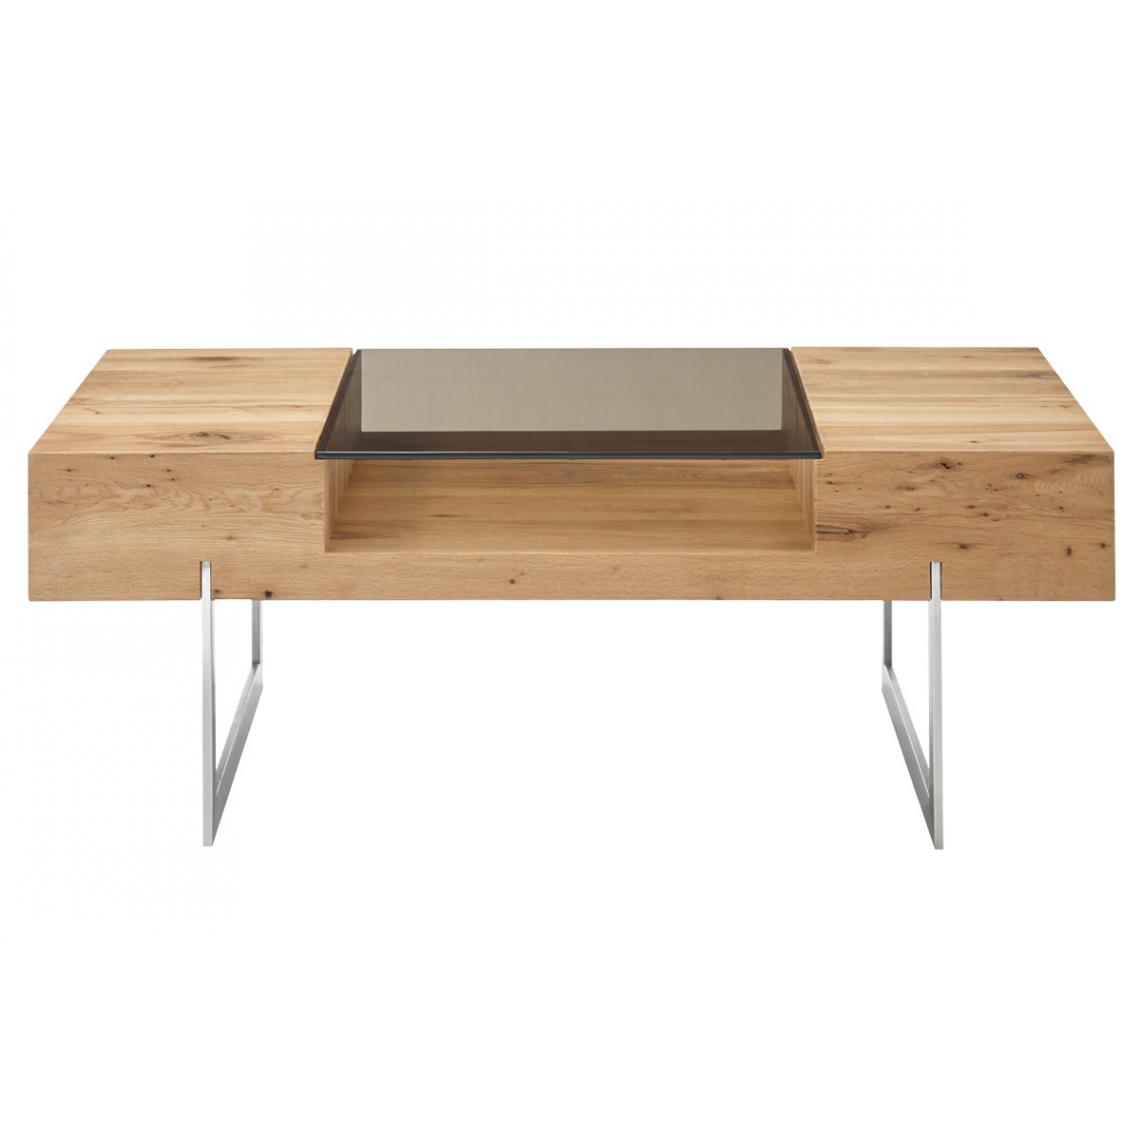 Pegane - Table basse en chêne noueux / verre bronze - L.110 x H.40 x P.60 cm - Tables basses